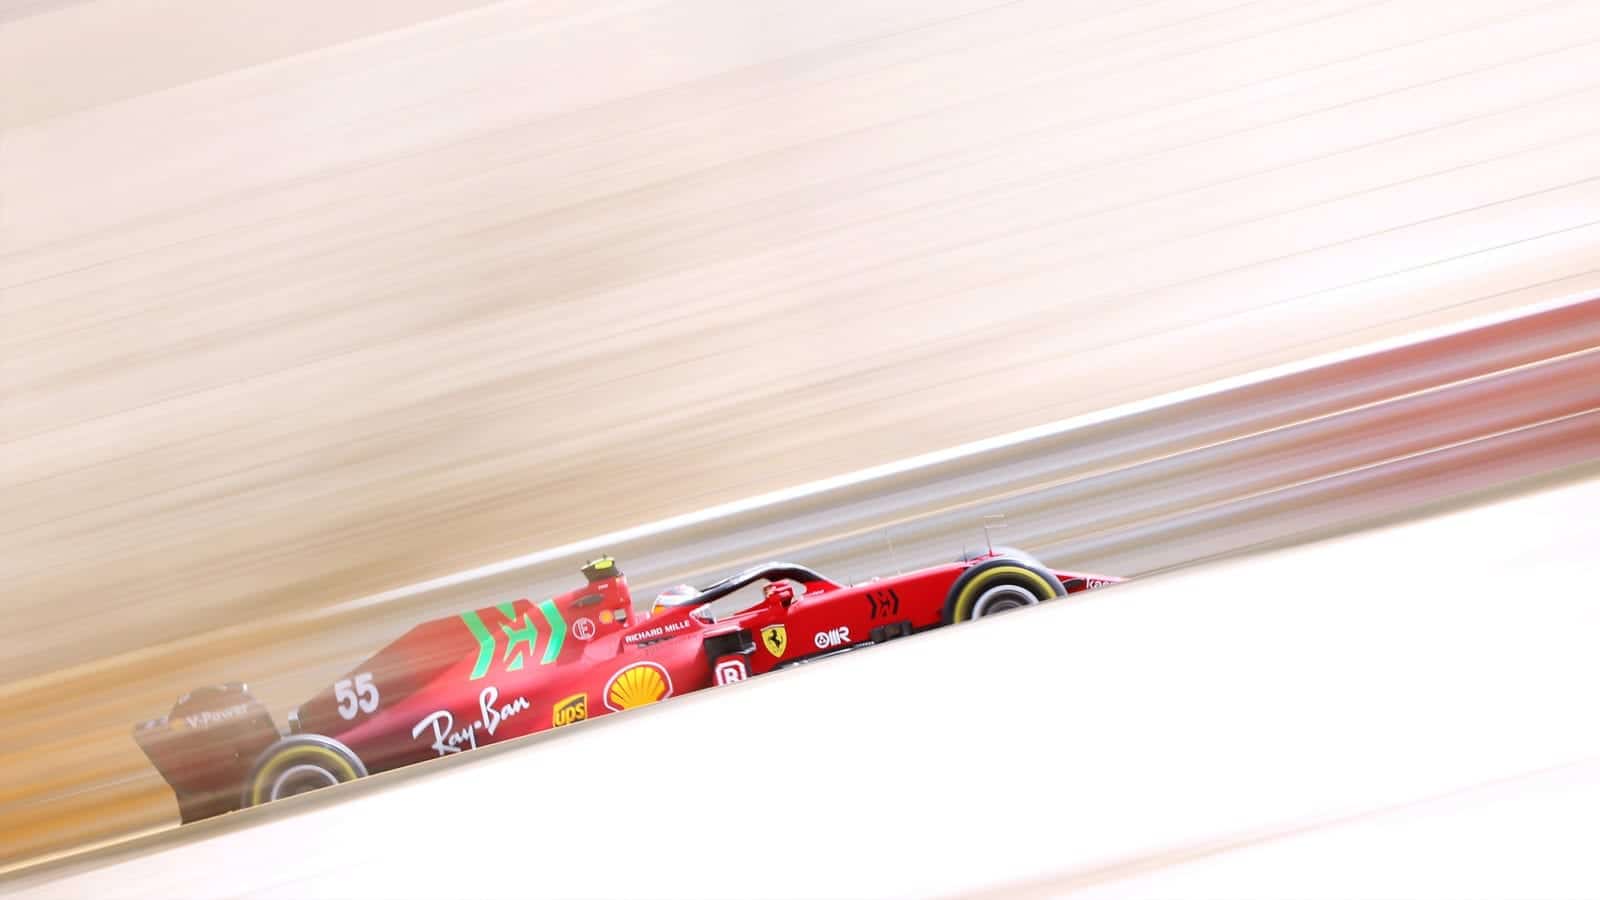 Carlos Sainz in 2021 Ferrari at Bahrain test